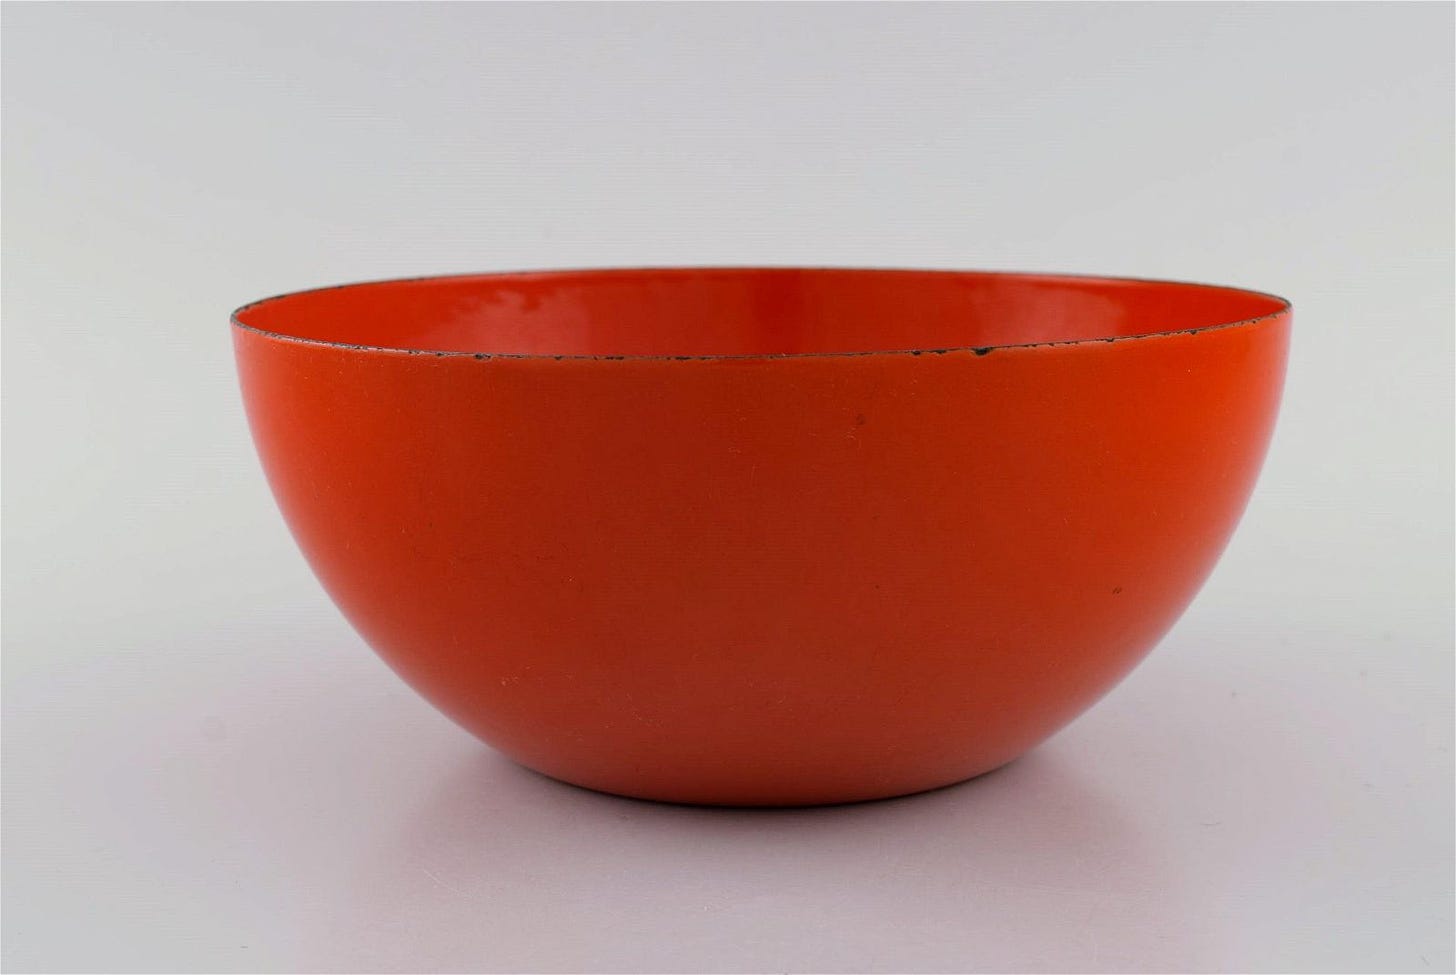 Kaj Franck (1911-1989) for Finel. Red bowl in enamelled metal. Finnish design, mid 20th century.